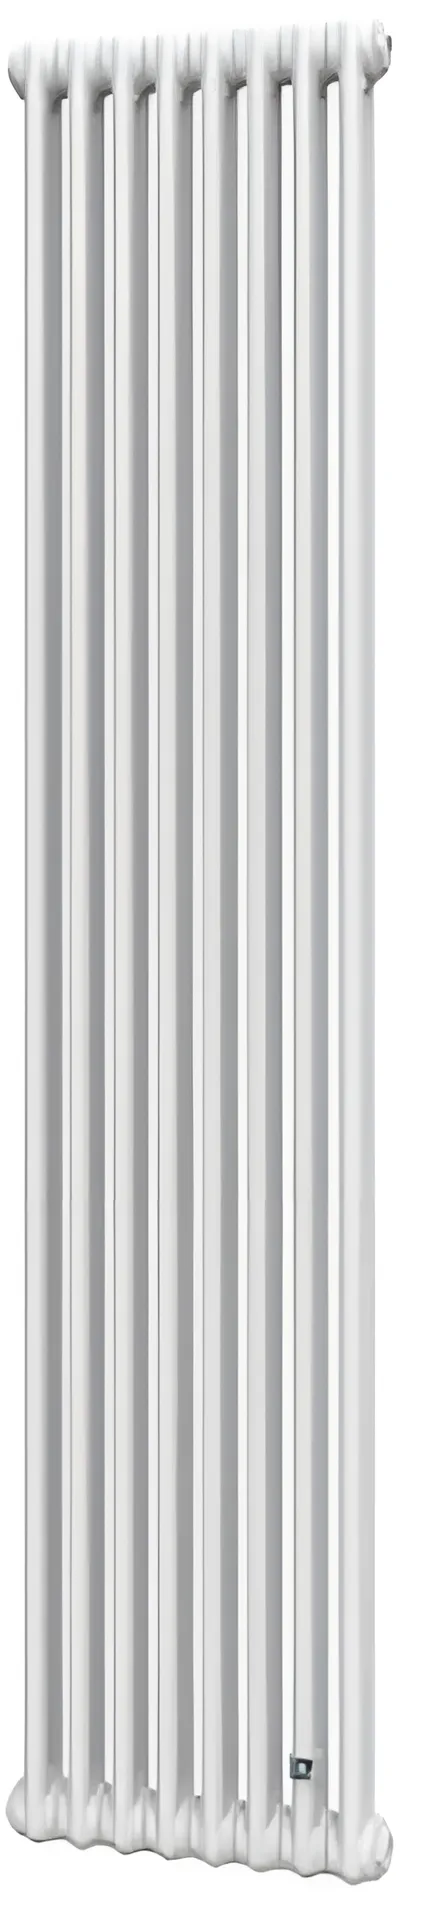 Трубчатый радиатор DeLonghi Multicolumn 1800 2 колонны 8 секций боковое 1/2 RAL9016 (0Q0021800080000)